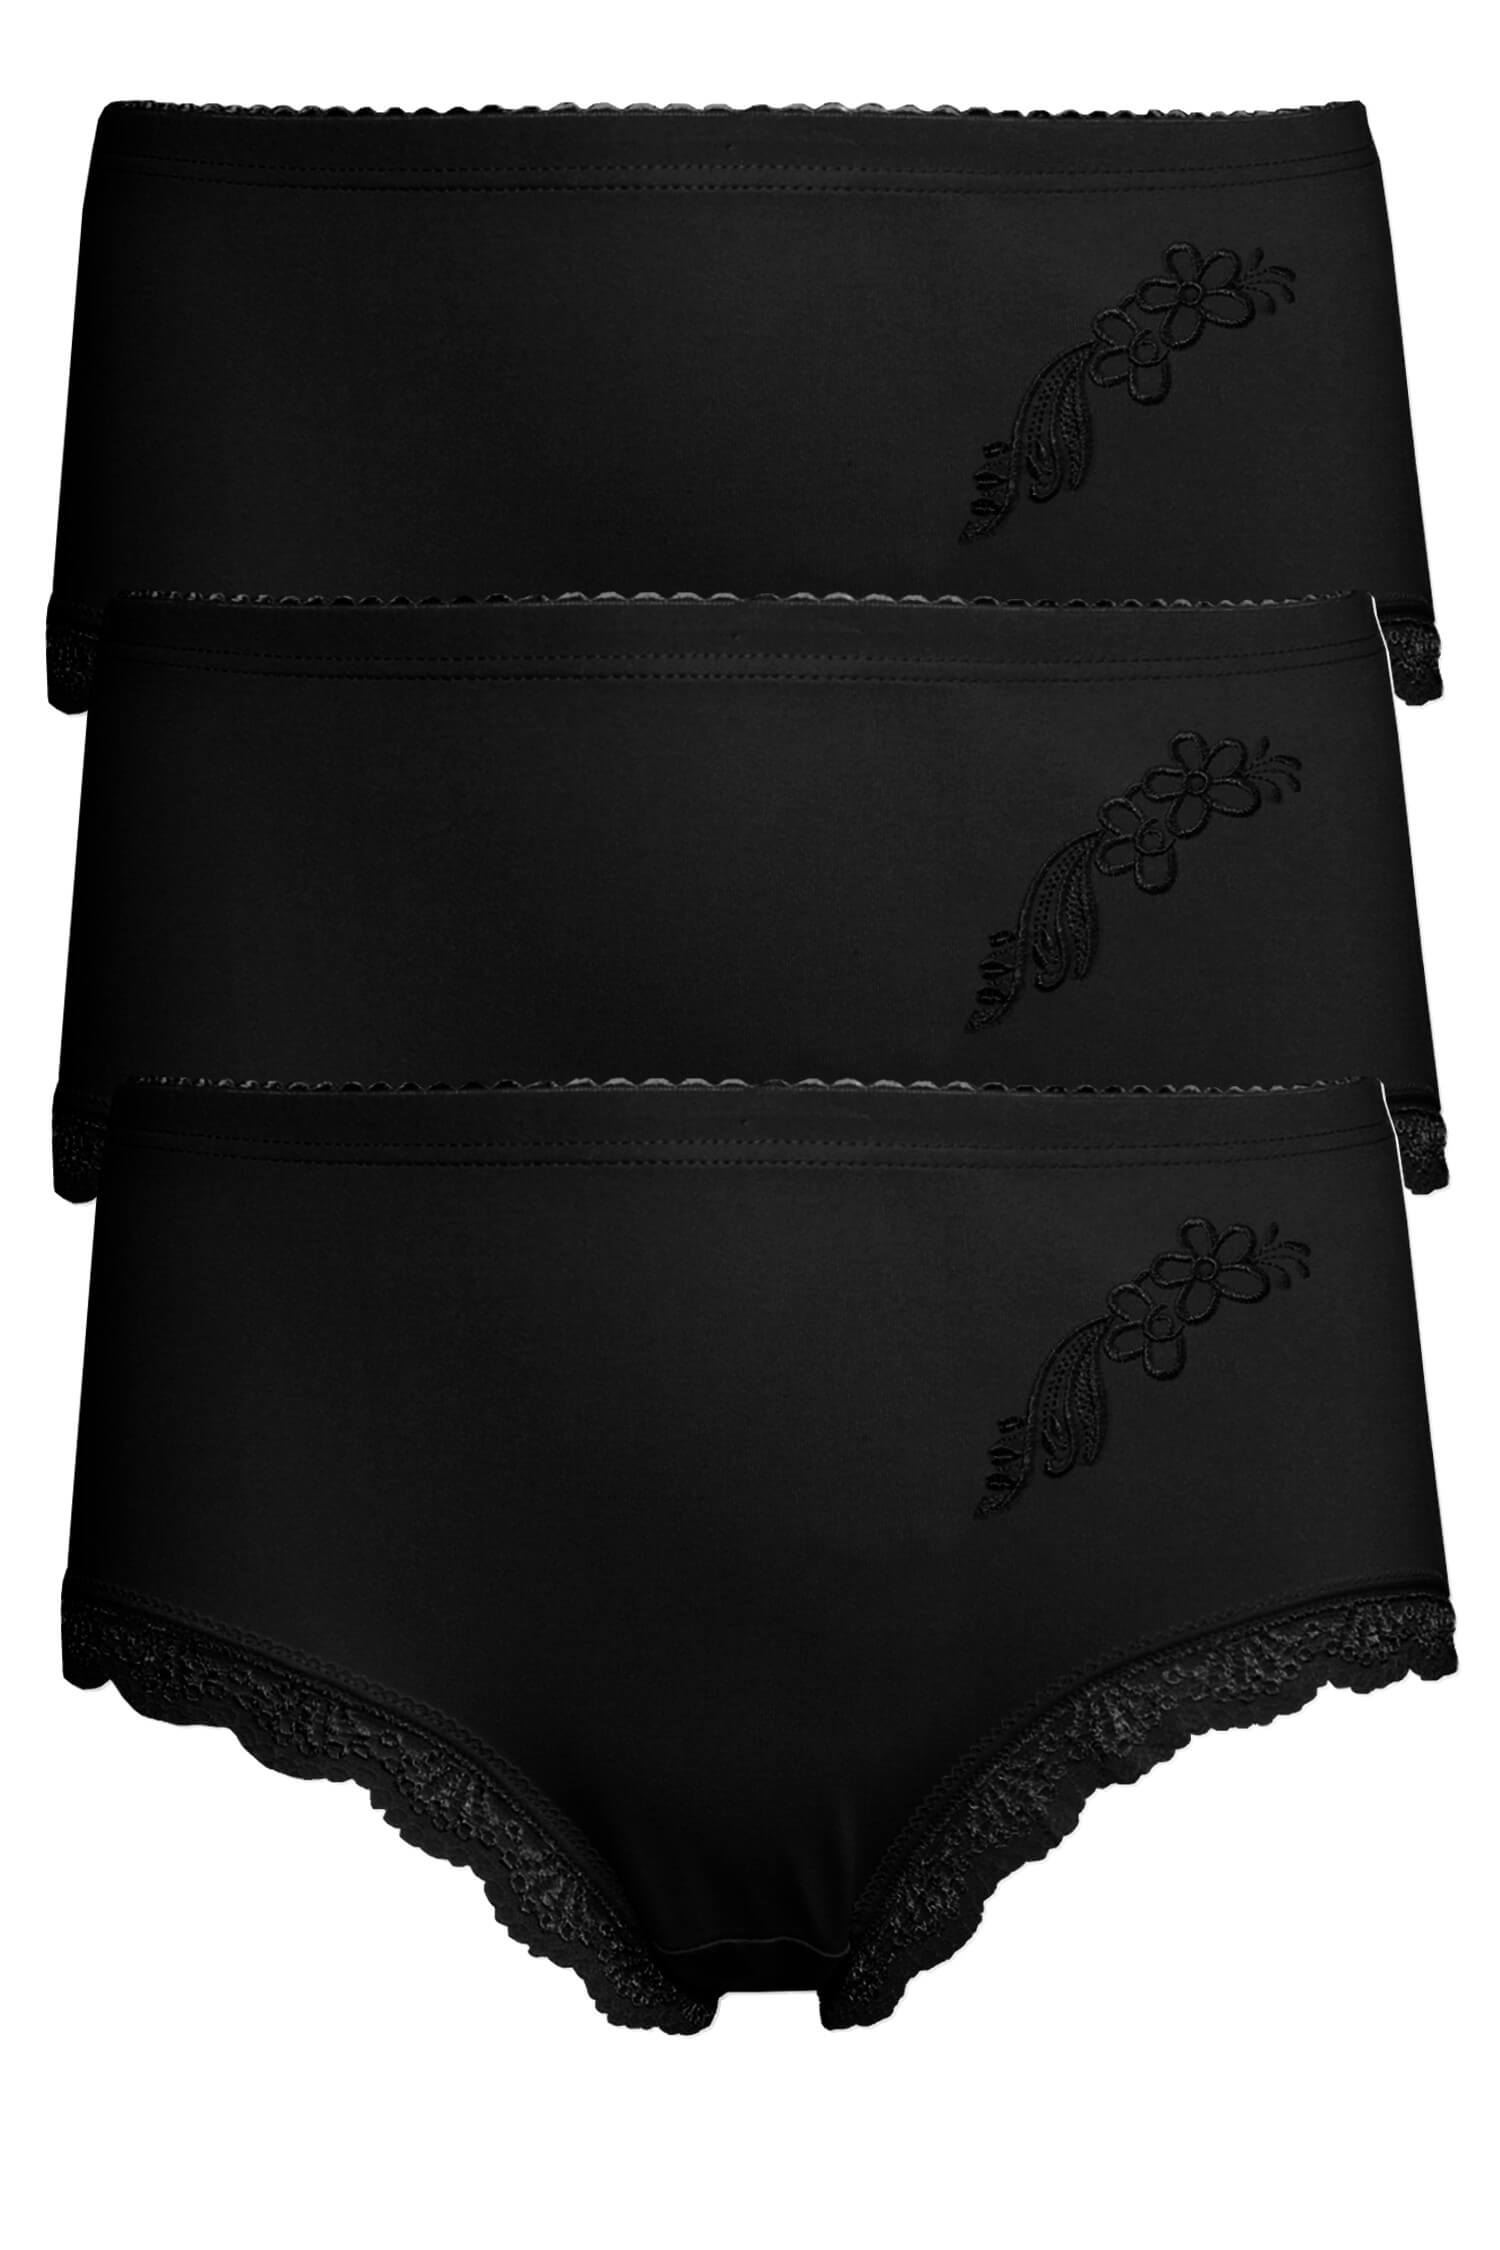 Danča bavlněné kalhotky s krajkou 9009 - 3bal XL černá